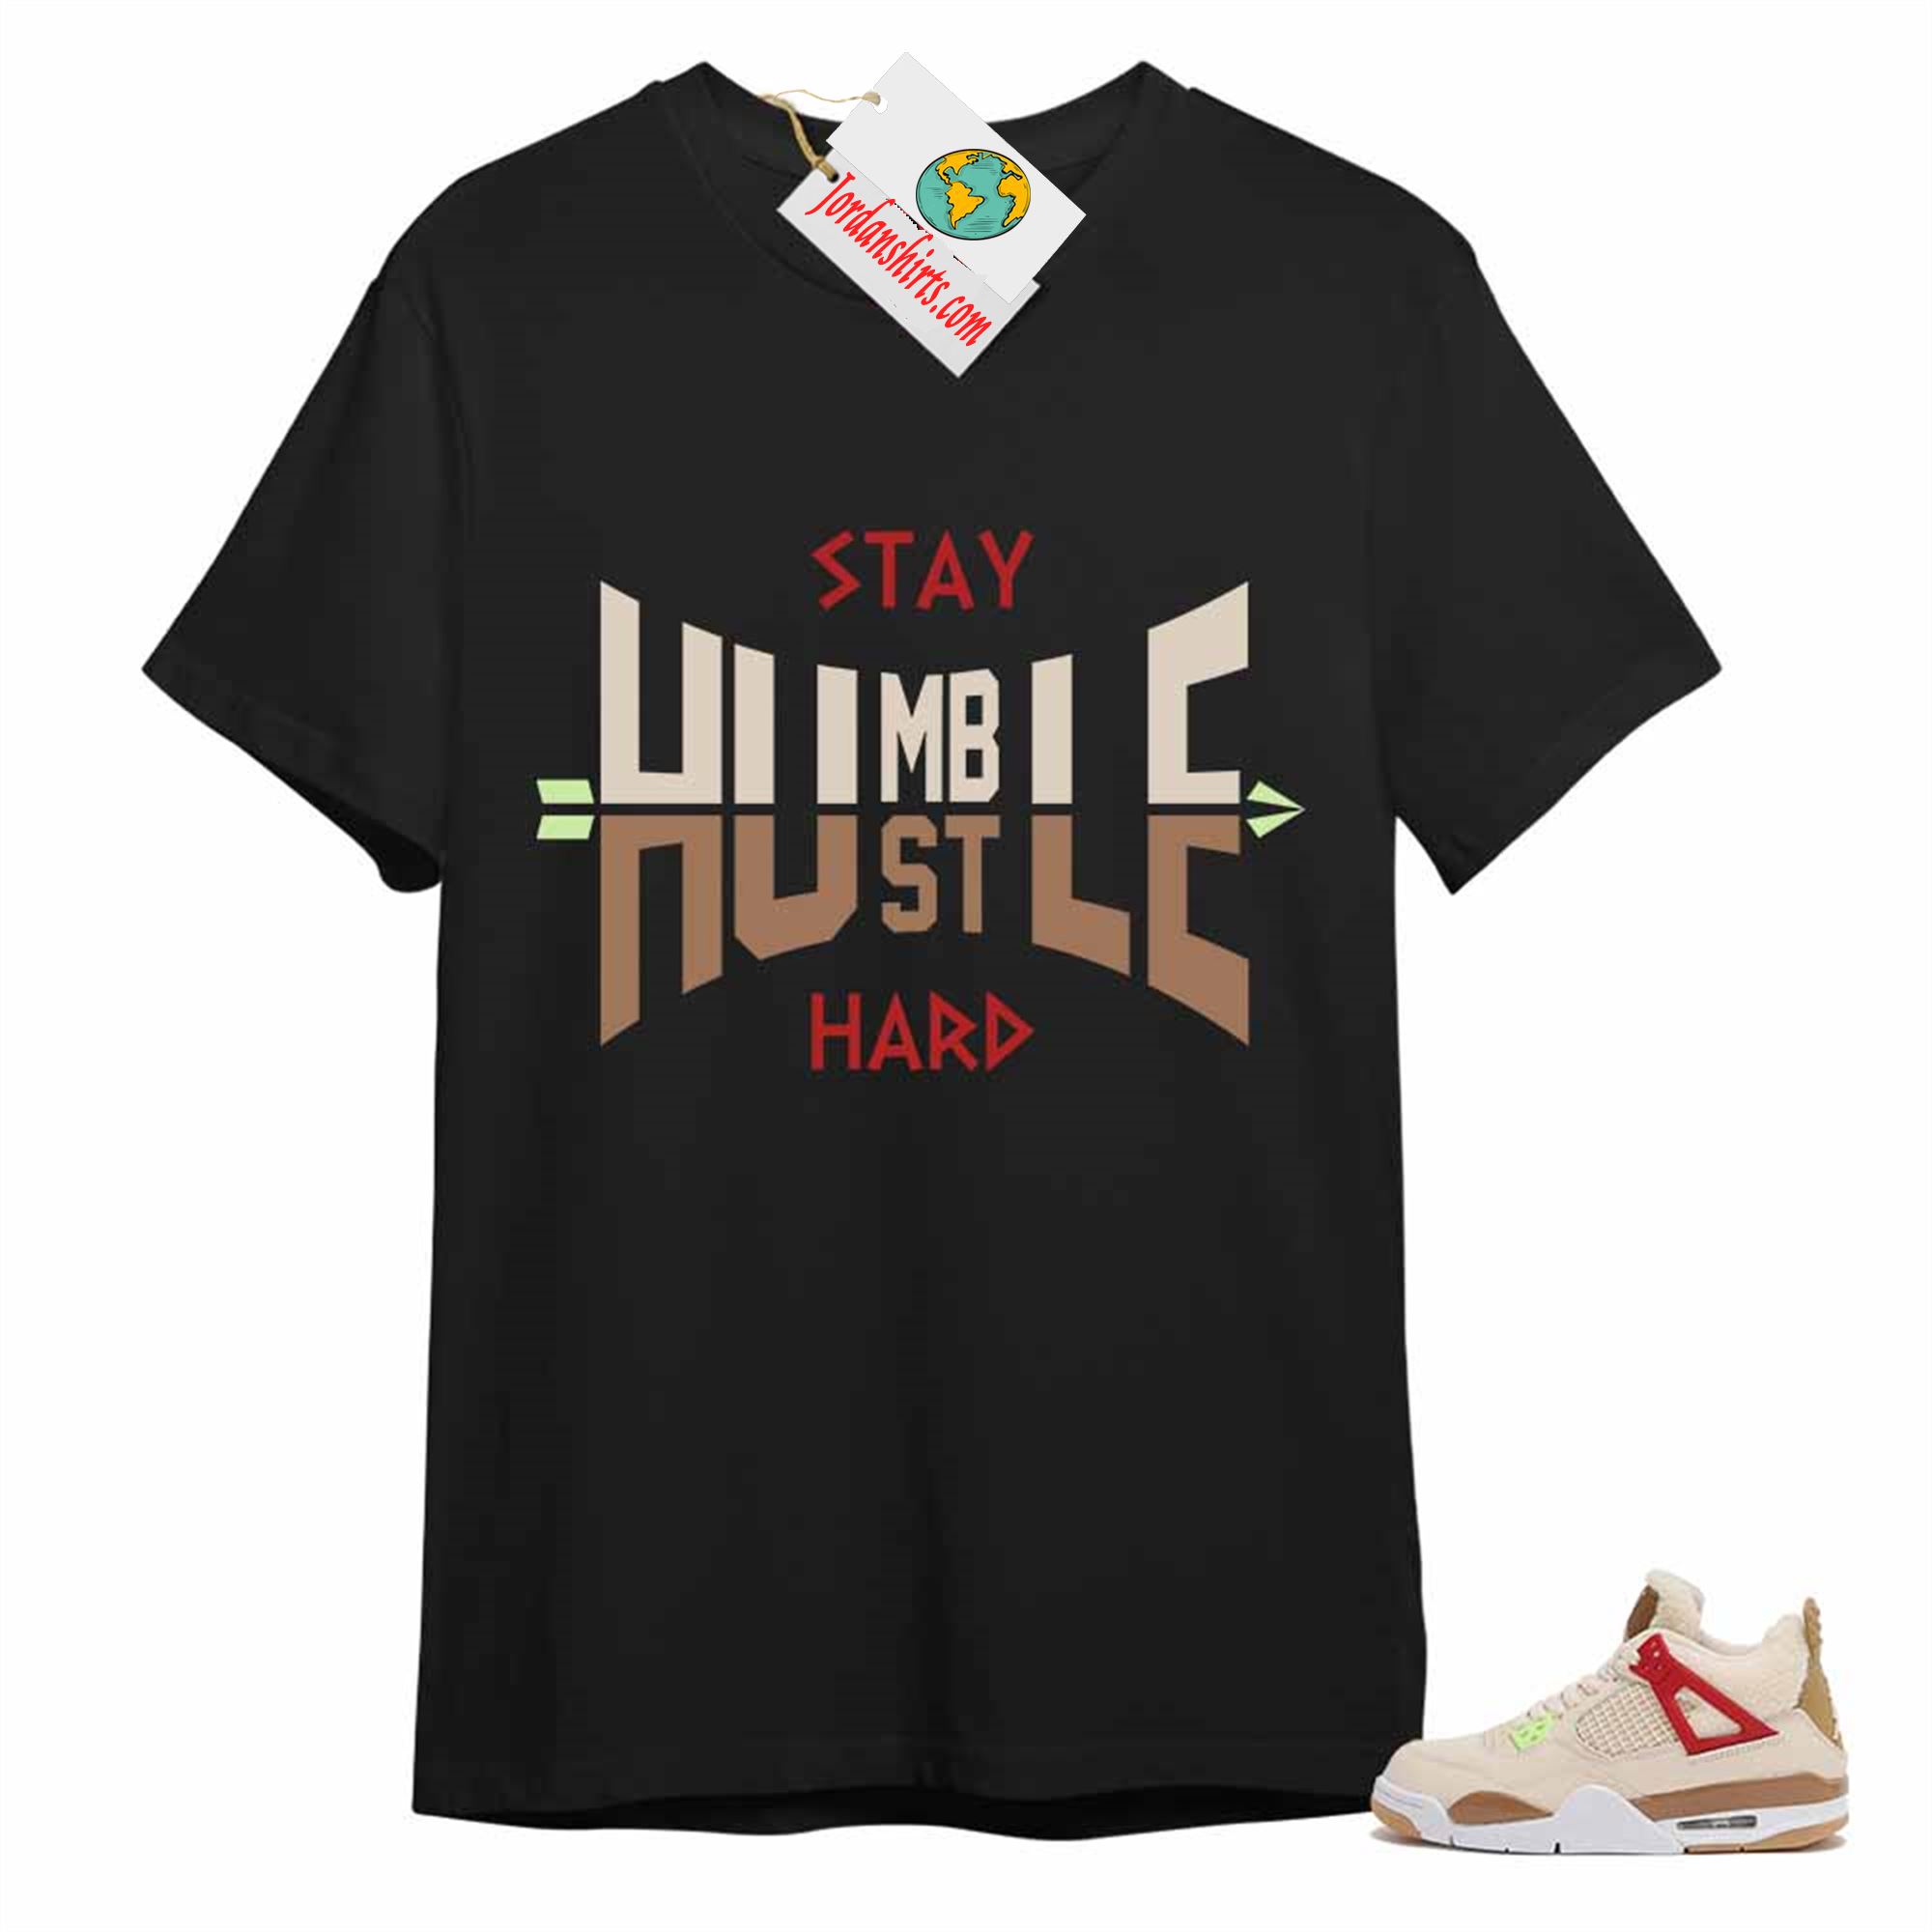 Jordan 4 Shirt, Humble Hustle Hard Black Air Jordan 4 Wild Things 4s Plus Size Up To 5xl